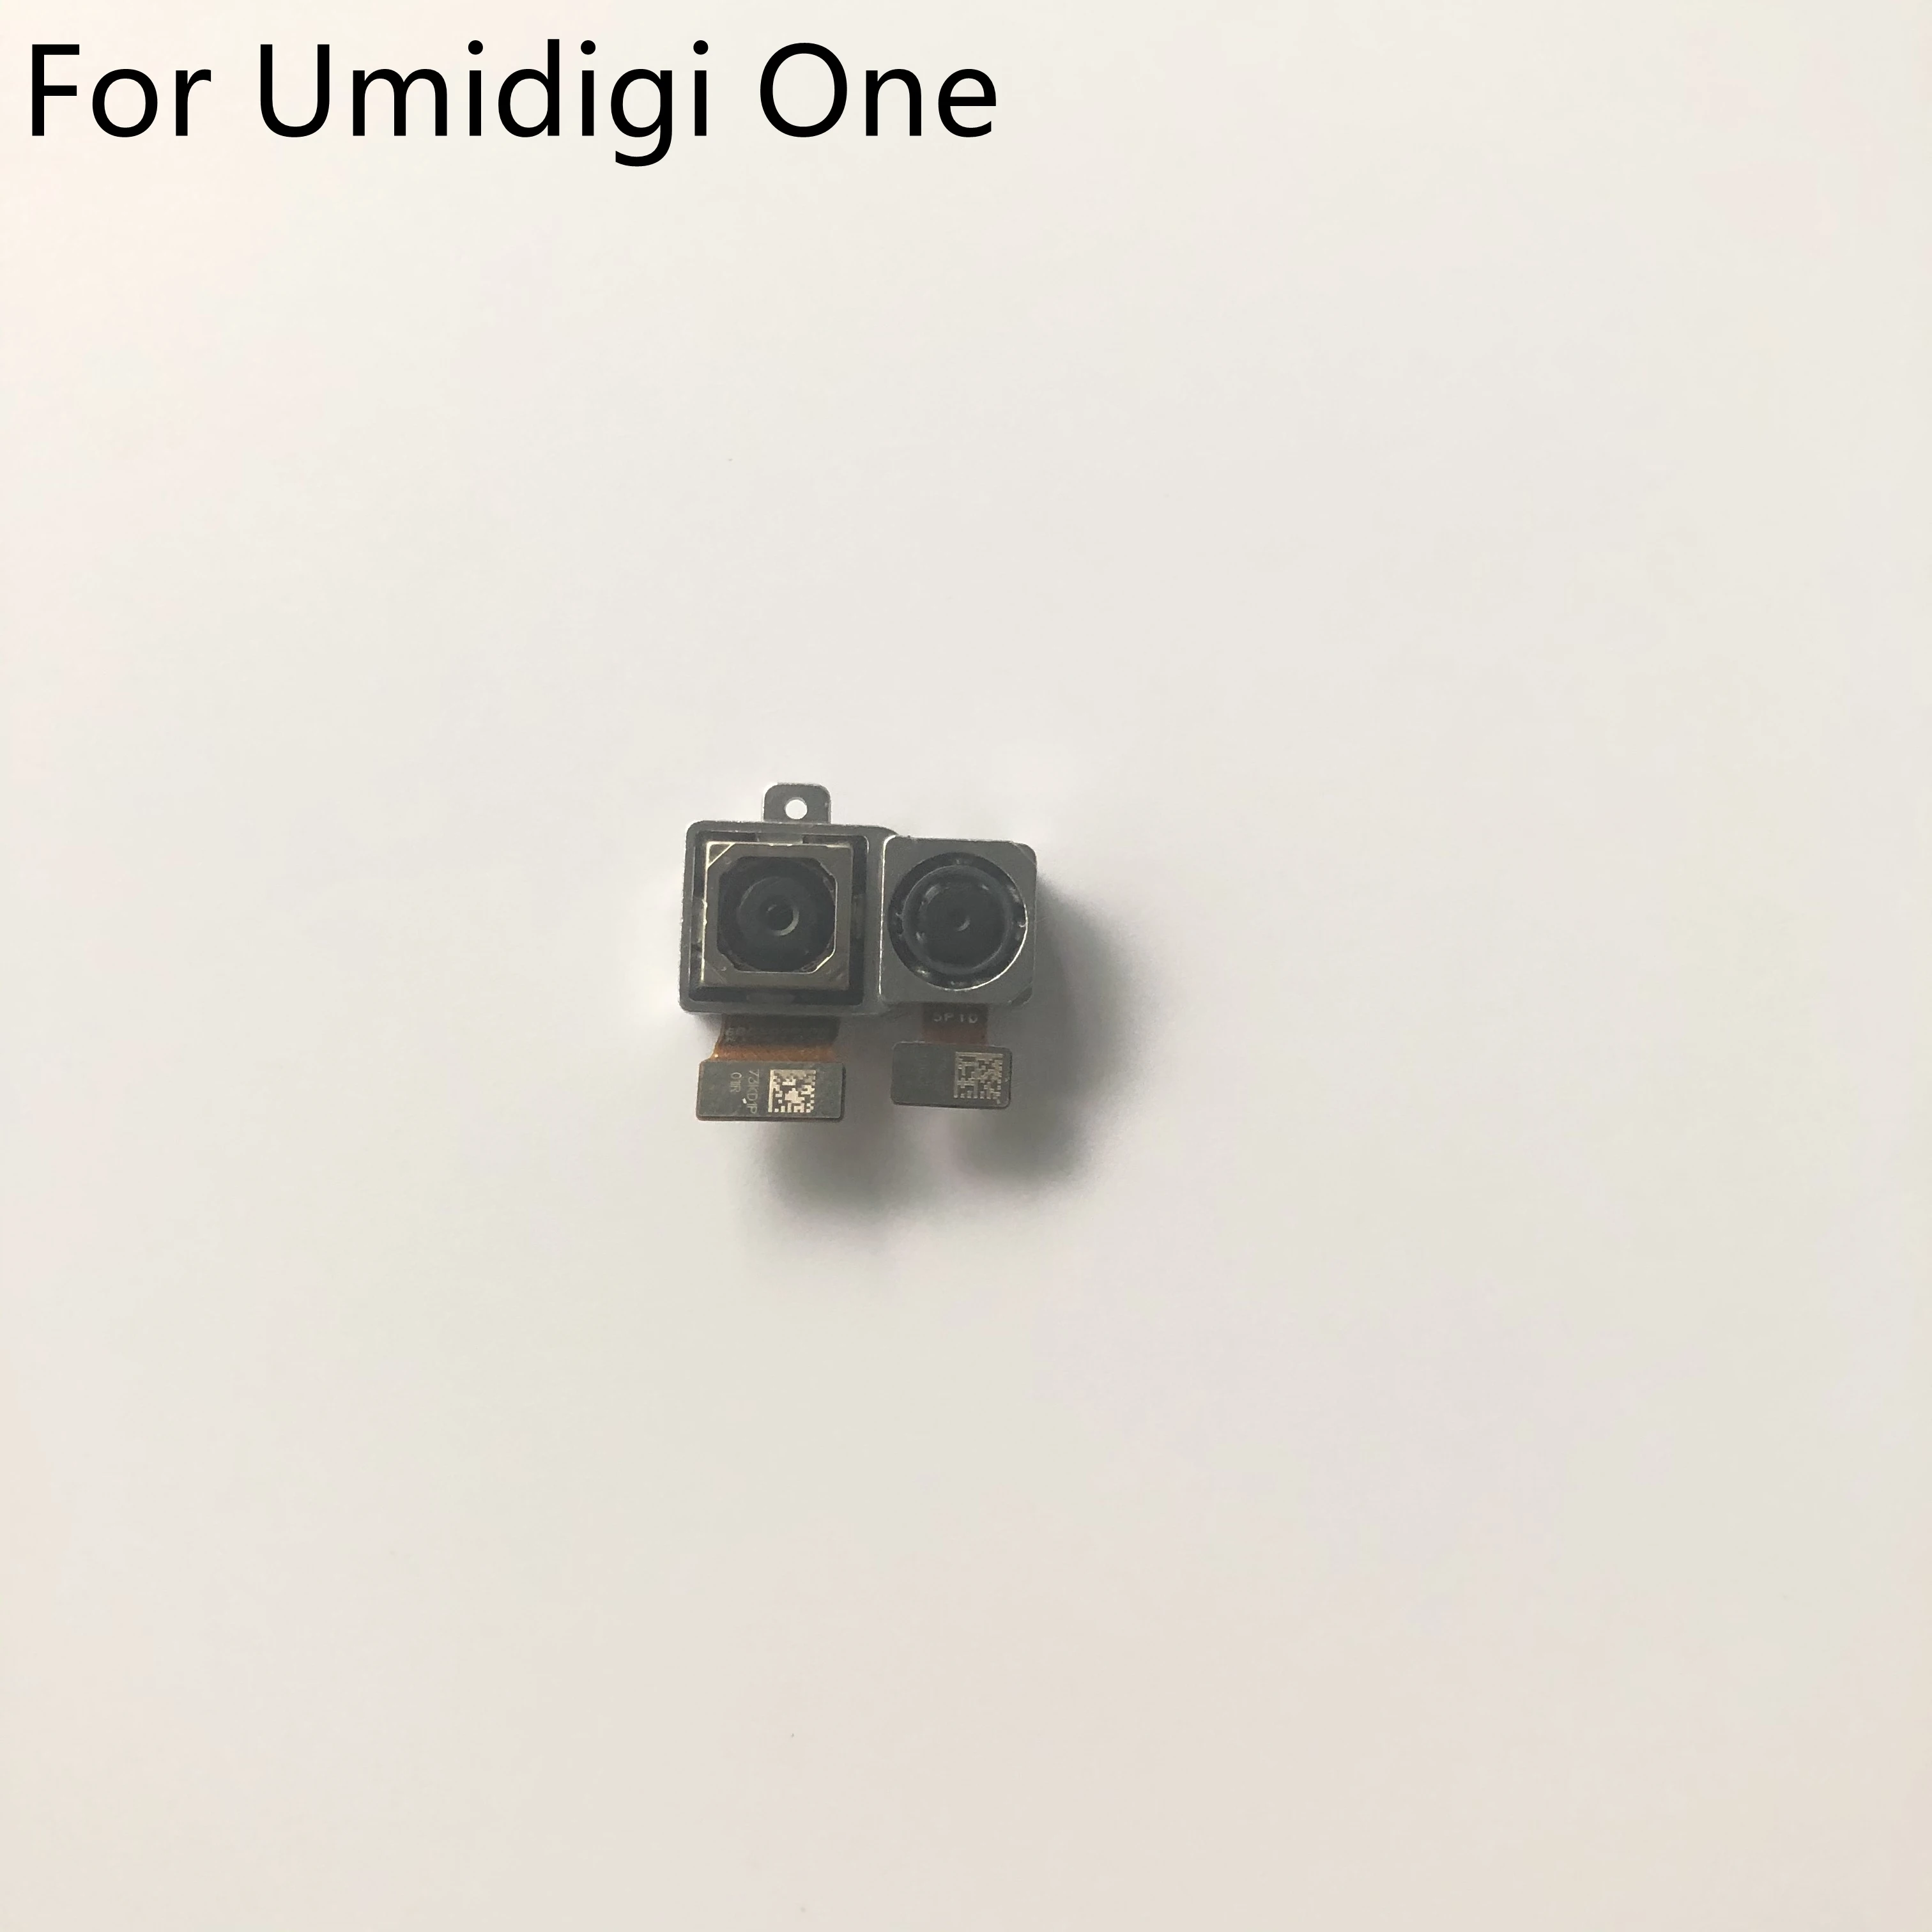 

Umidigi One Used Back Camera Rear Camera 12.0+5.0MP Module For Umidigi One MTK Helio P23 5.9" 1520 x 720 Smartphone